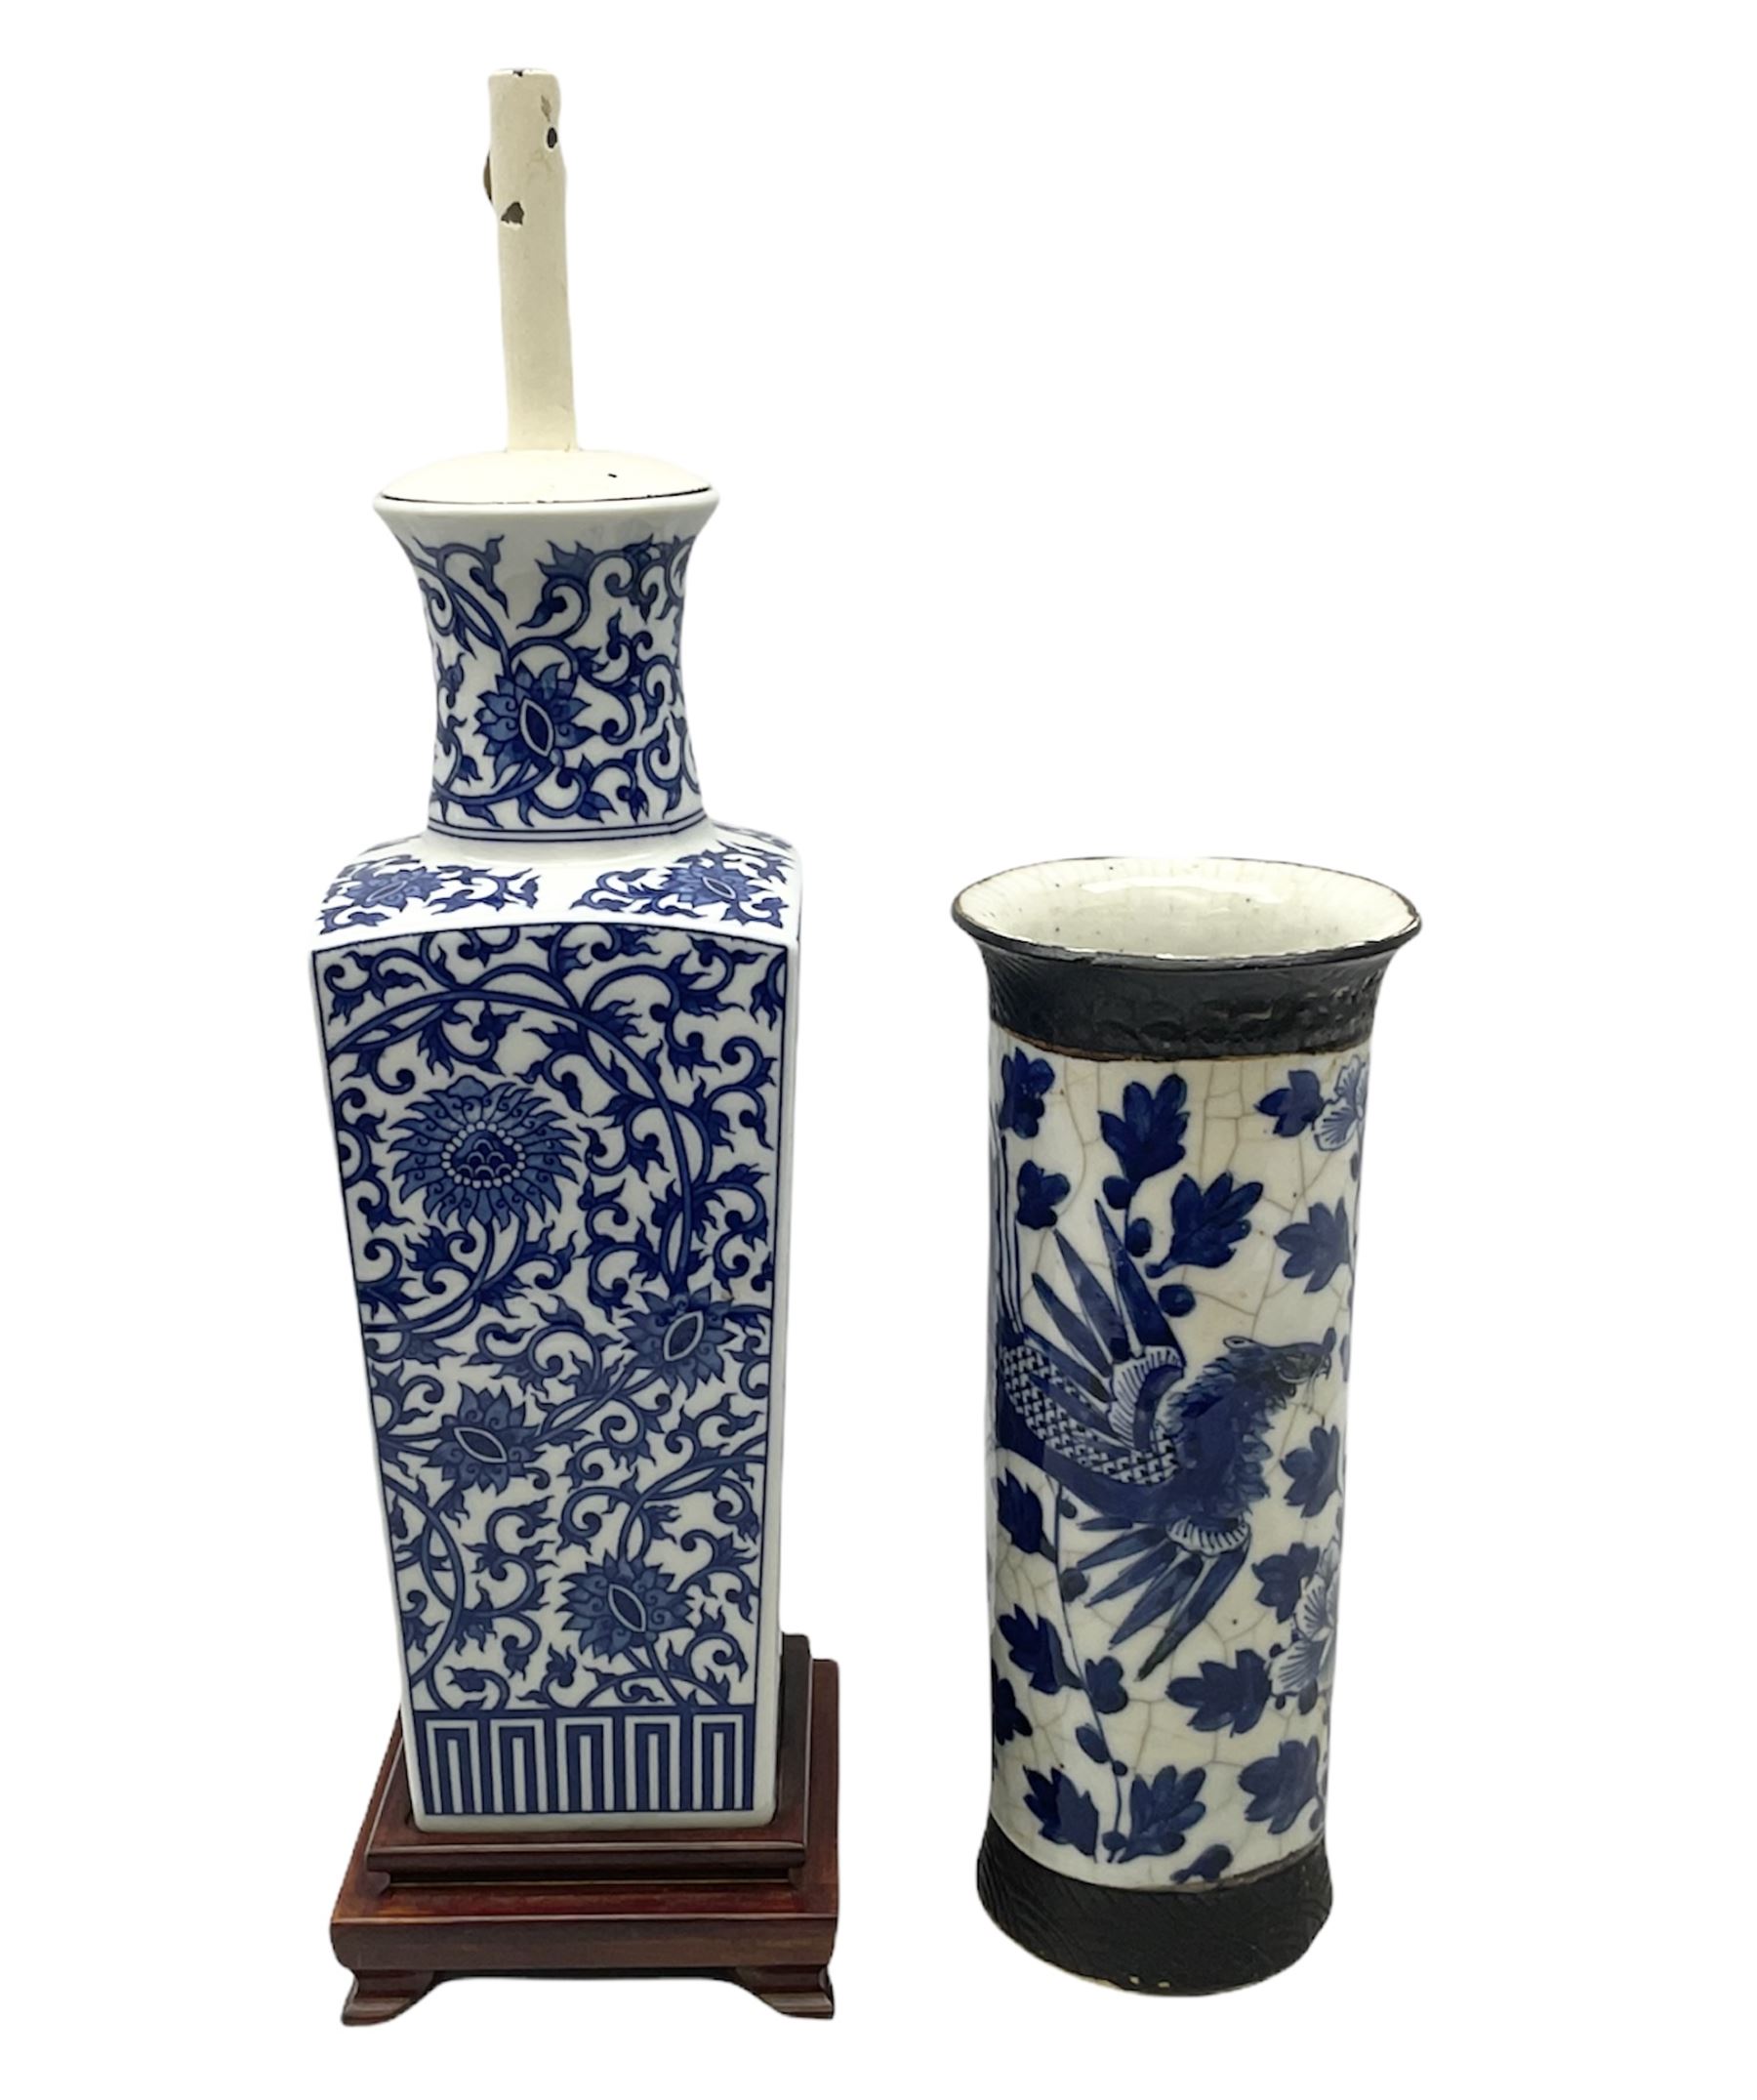 Japanese blue and white crackle glaze cylindrical vase